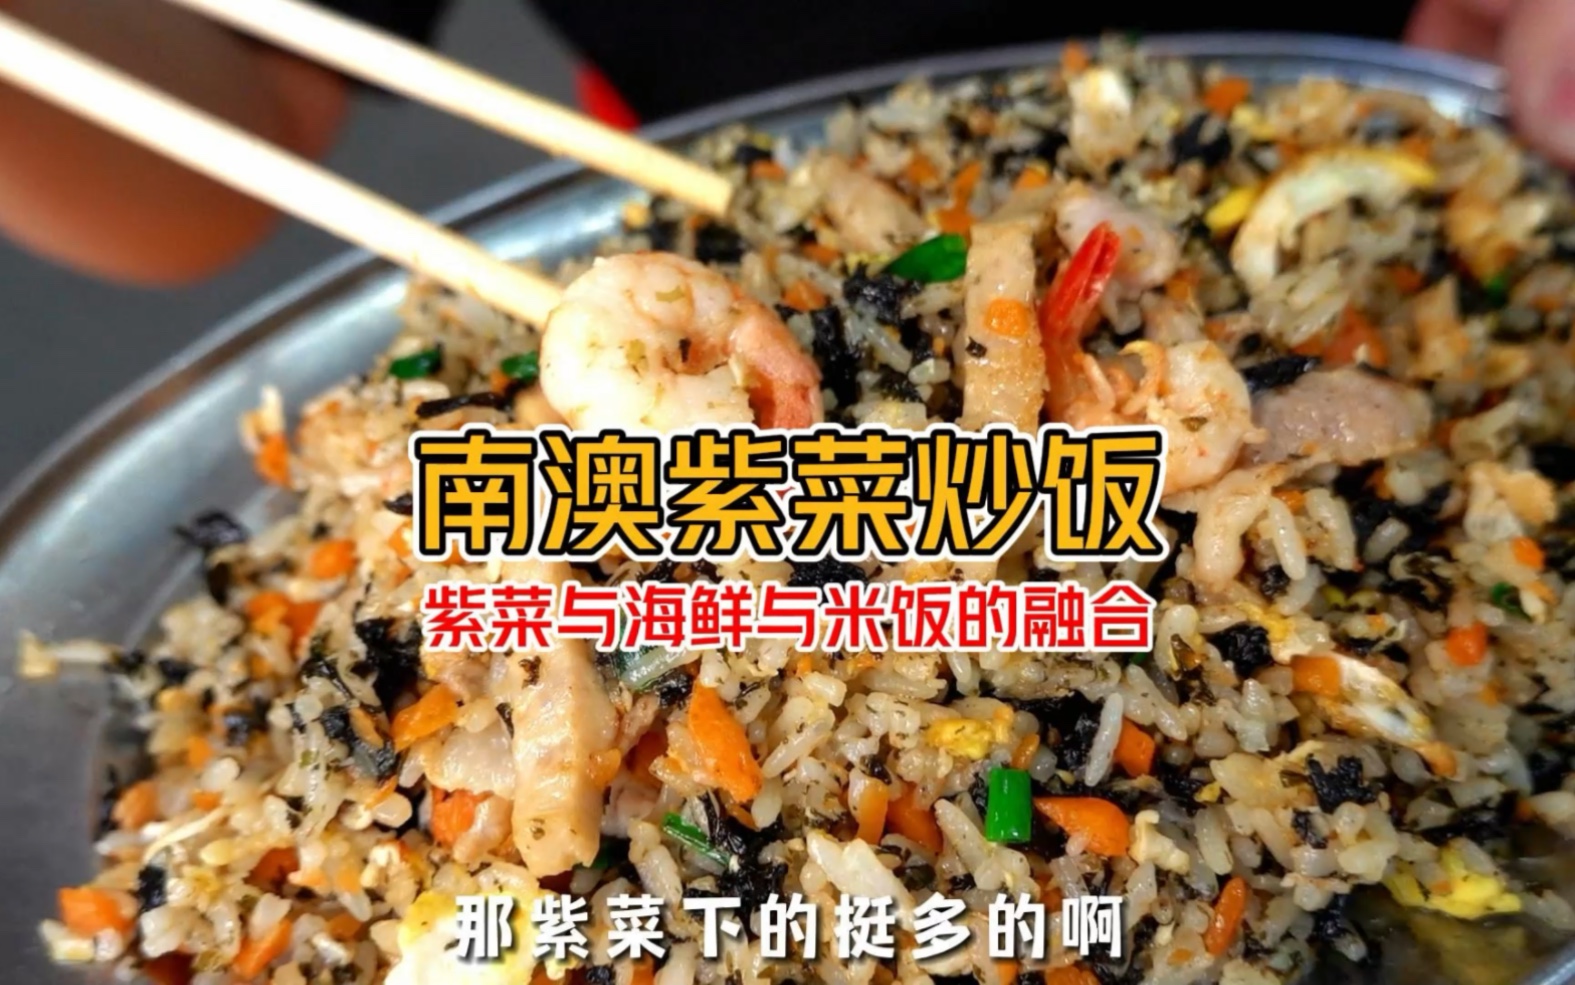 《潮汕海鲜紫菜炒饭该有的样子》米饭与海鲜炒饭的超级融合 原汁原味海鲜汤 确定不来潮汕整一碗？